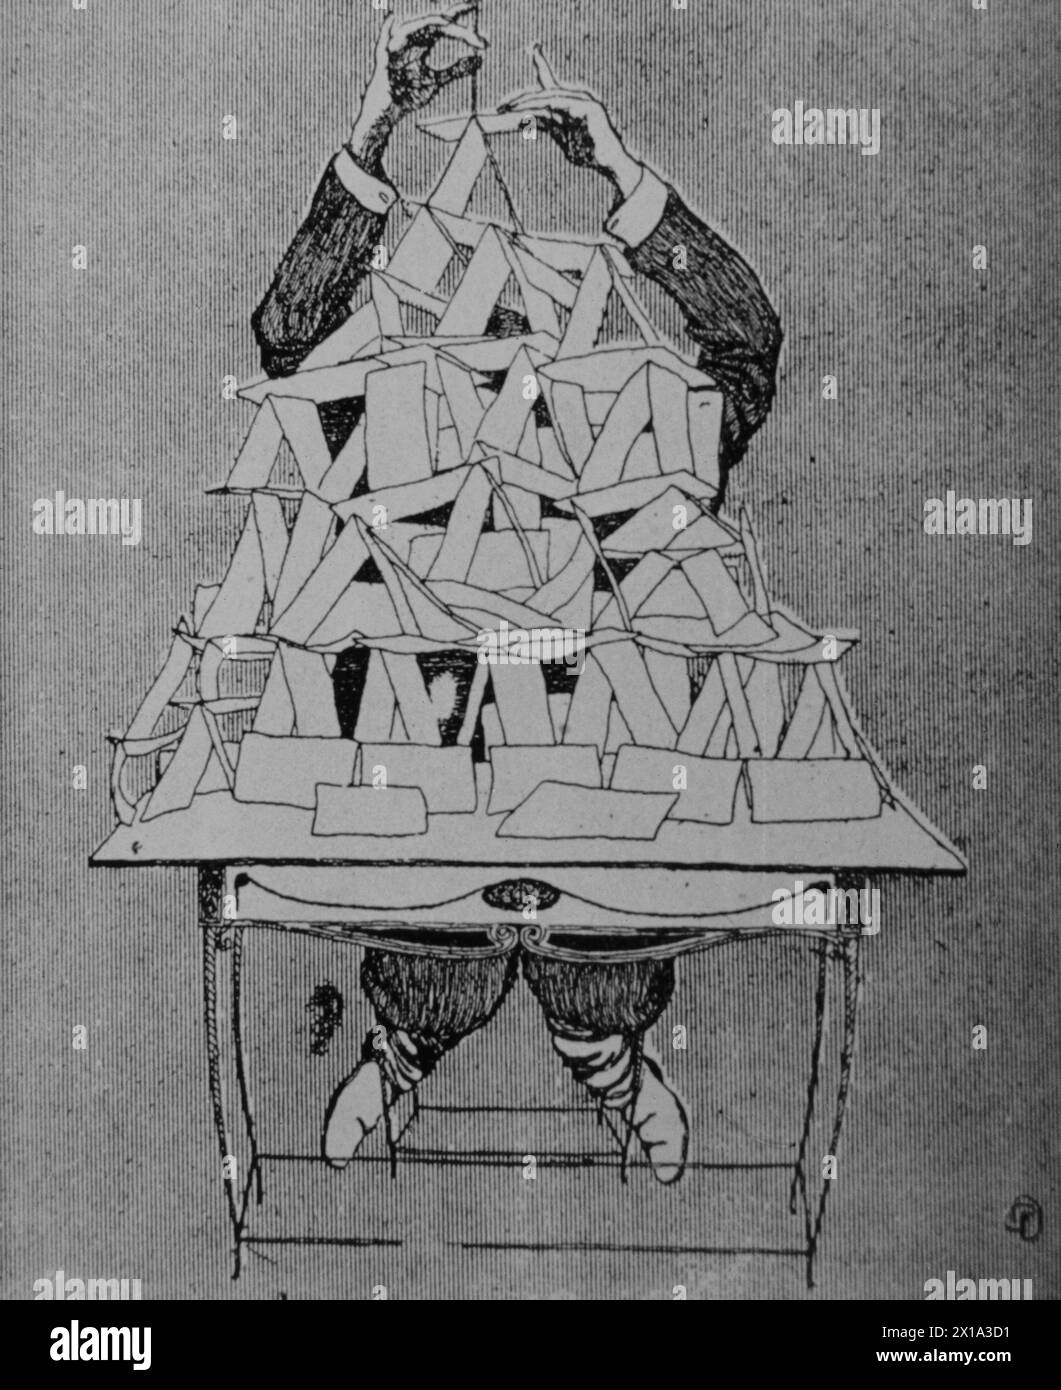 Unsere Verfassung - bitte atmen Sie nicht auf sie ein, Cartoon, der die russische Verfassung von 1905 als ein Kartenhaus darstellt Stockfoto